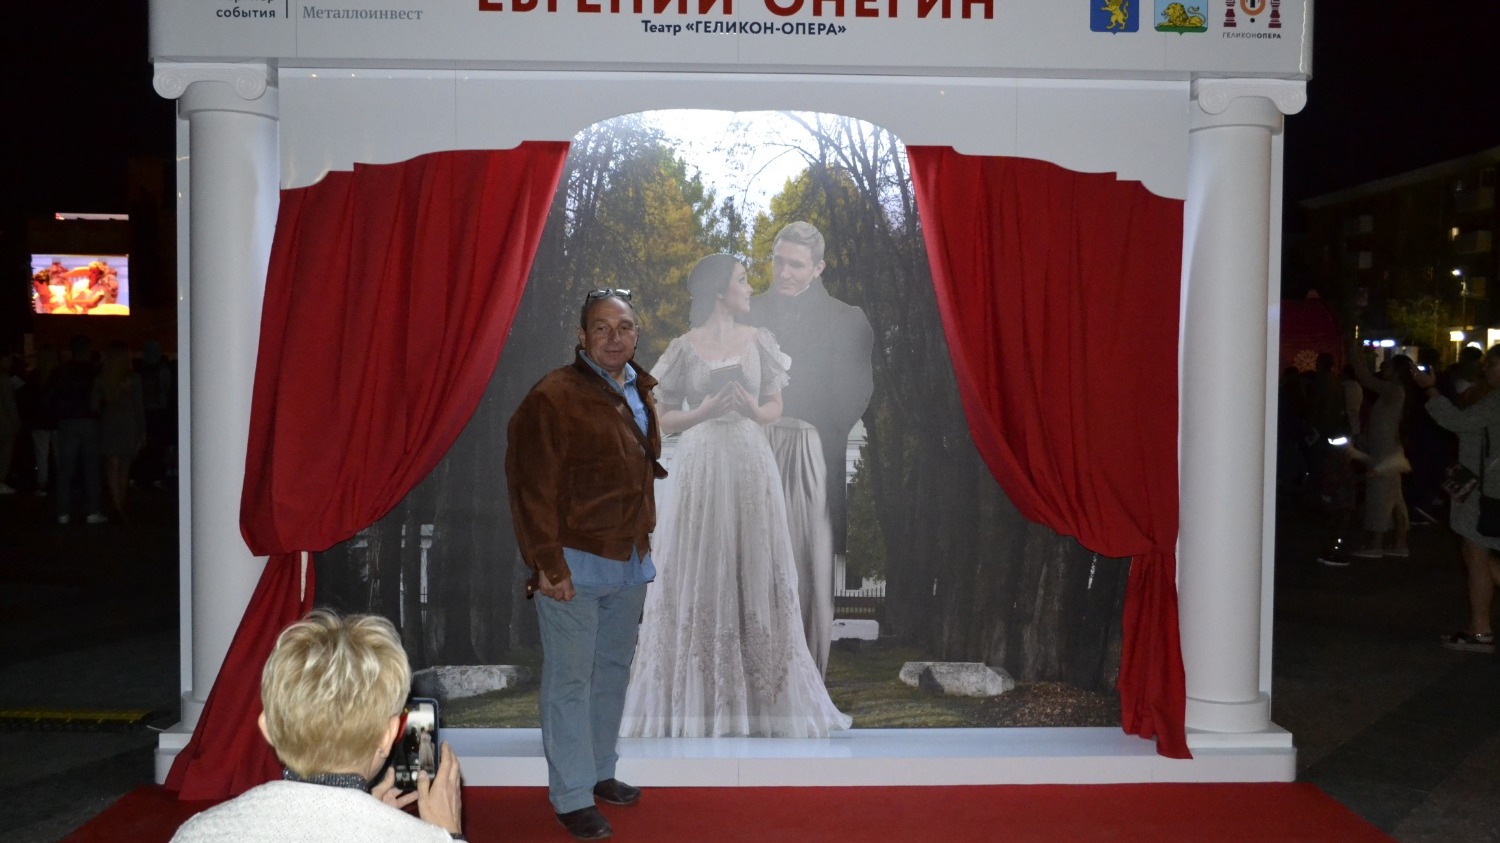 опера "Евгений Онегин" в Белгороде